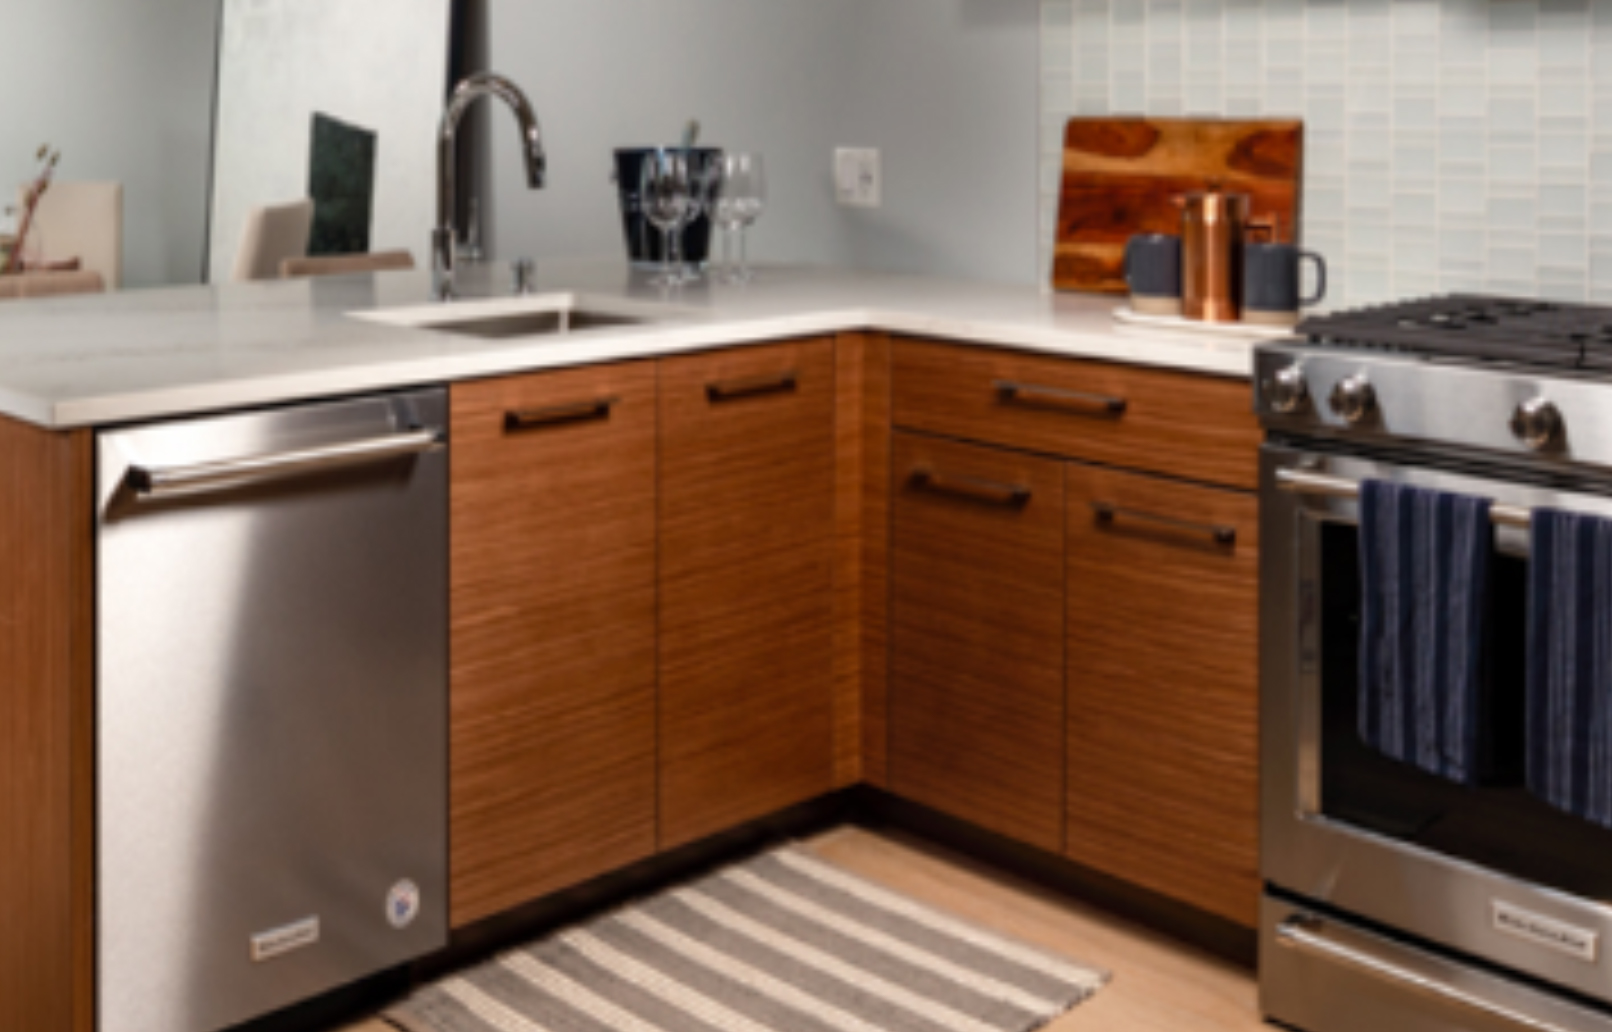 Brown Kitchen Cabinets